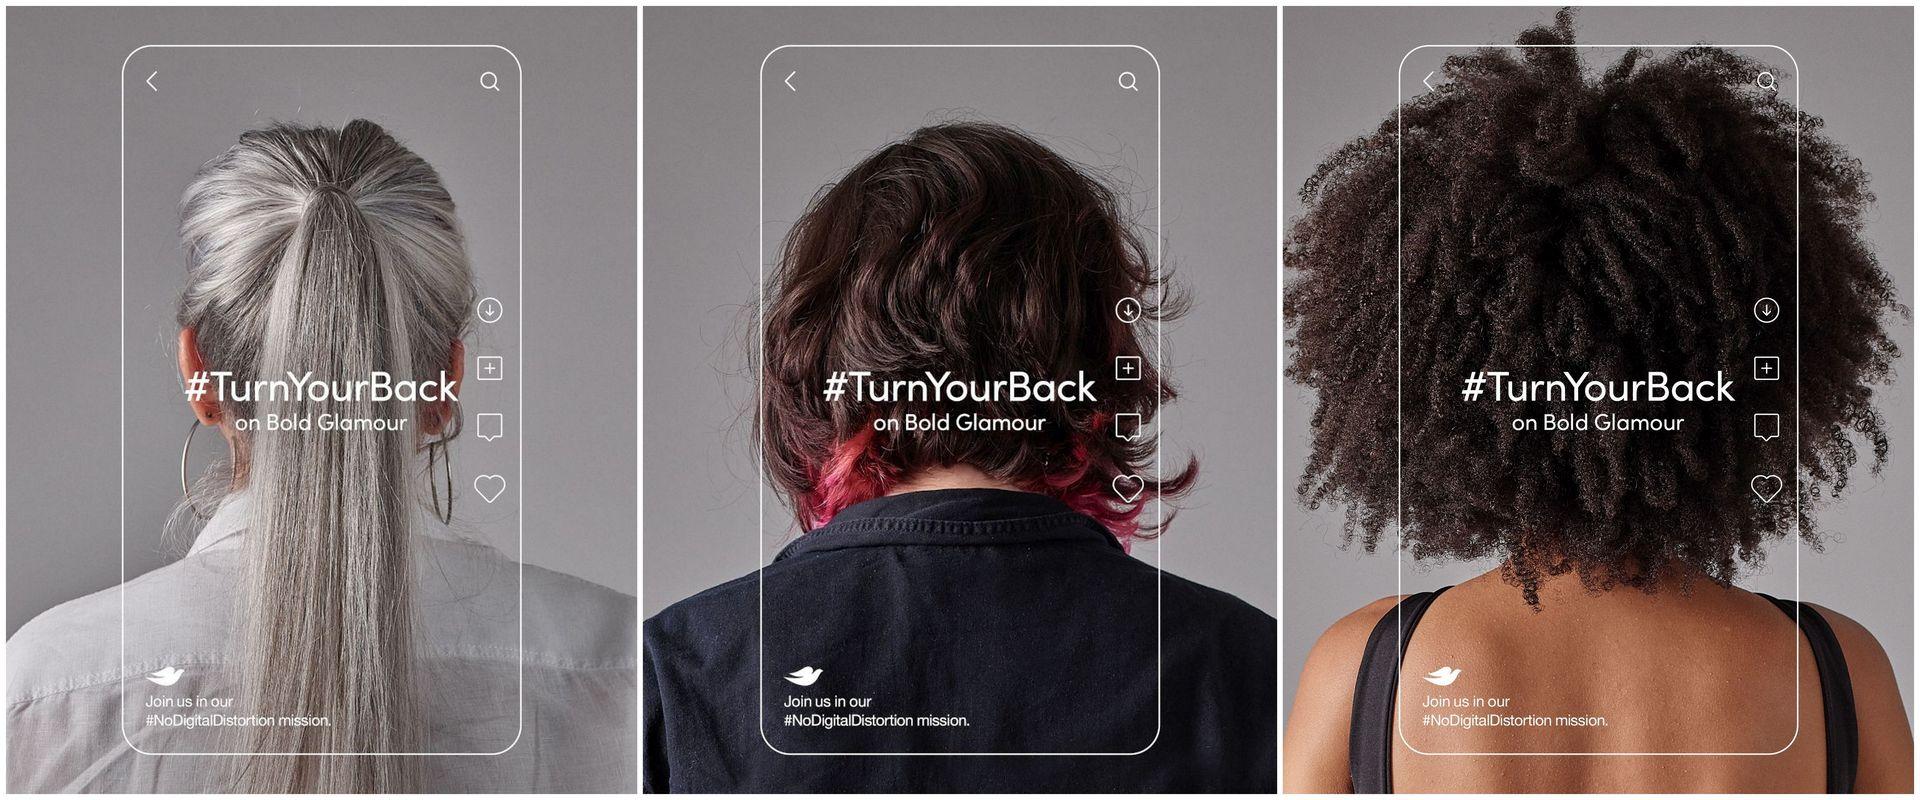 Dove z kampanią Turn It Back - chodzi o głośny filtr z Tiktoka